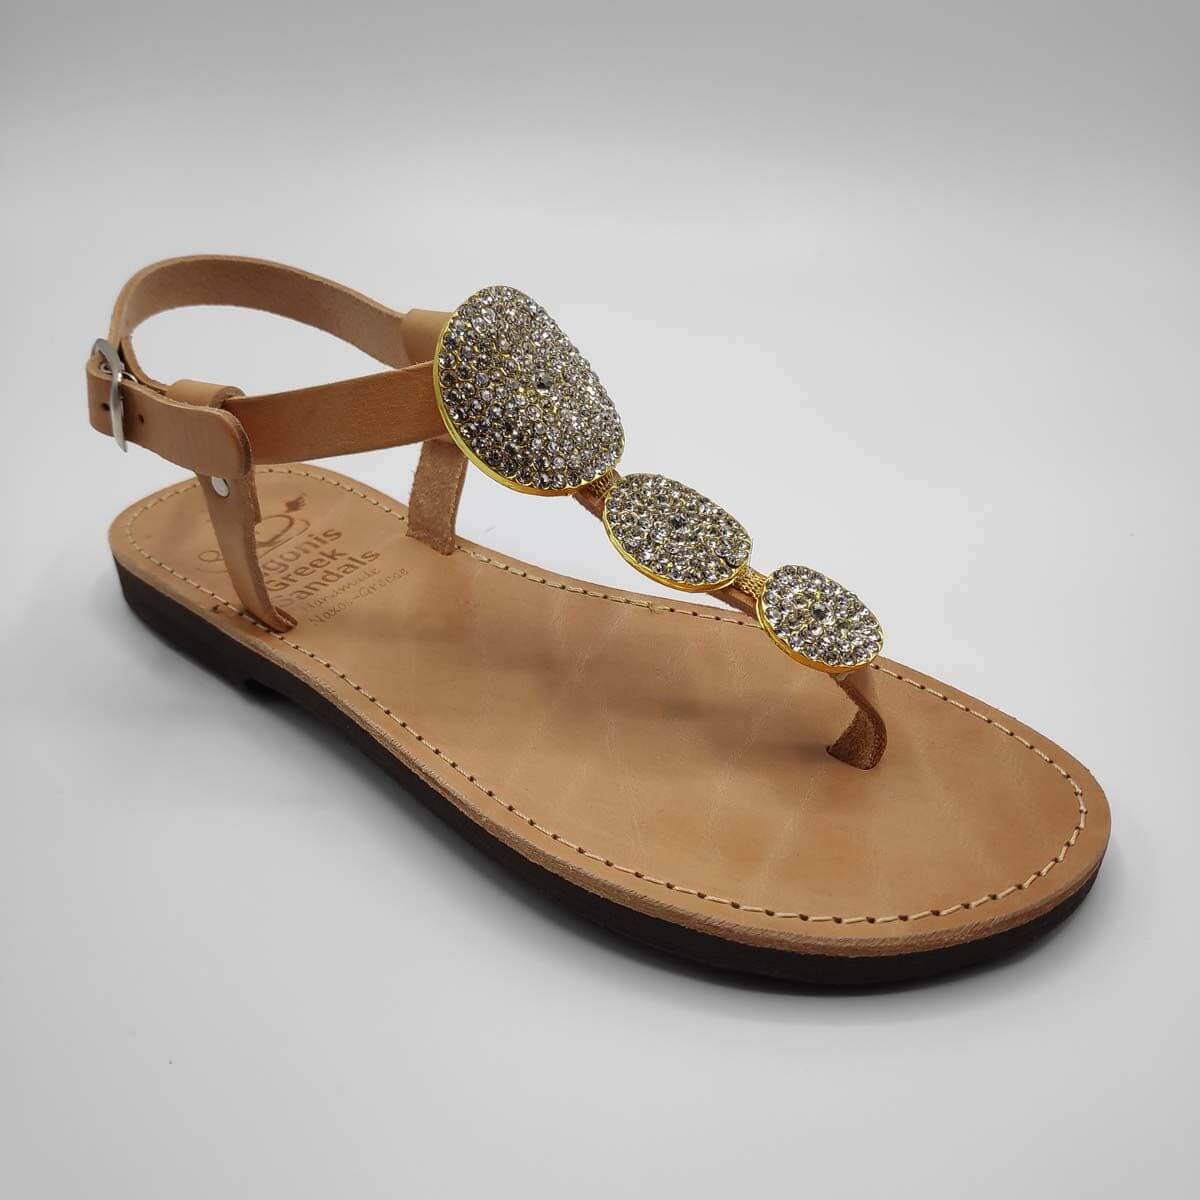 Kassandra jewelled sandals | Pagonis Greek Sandals